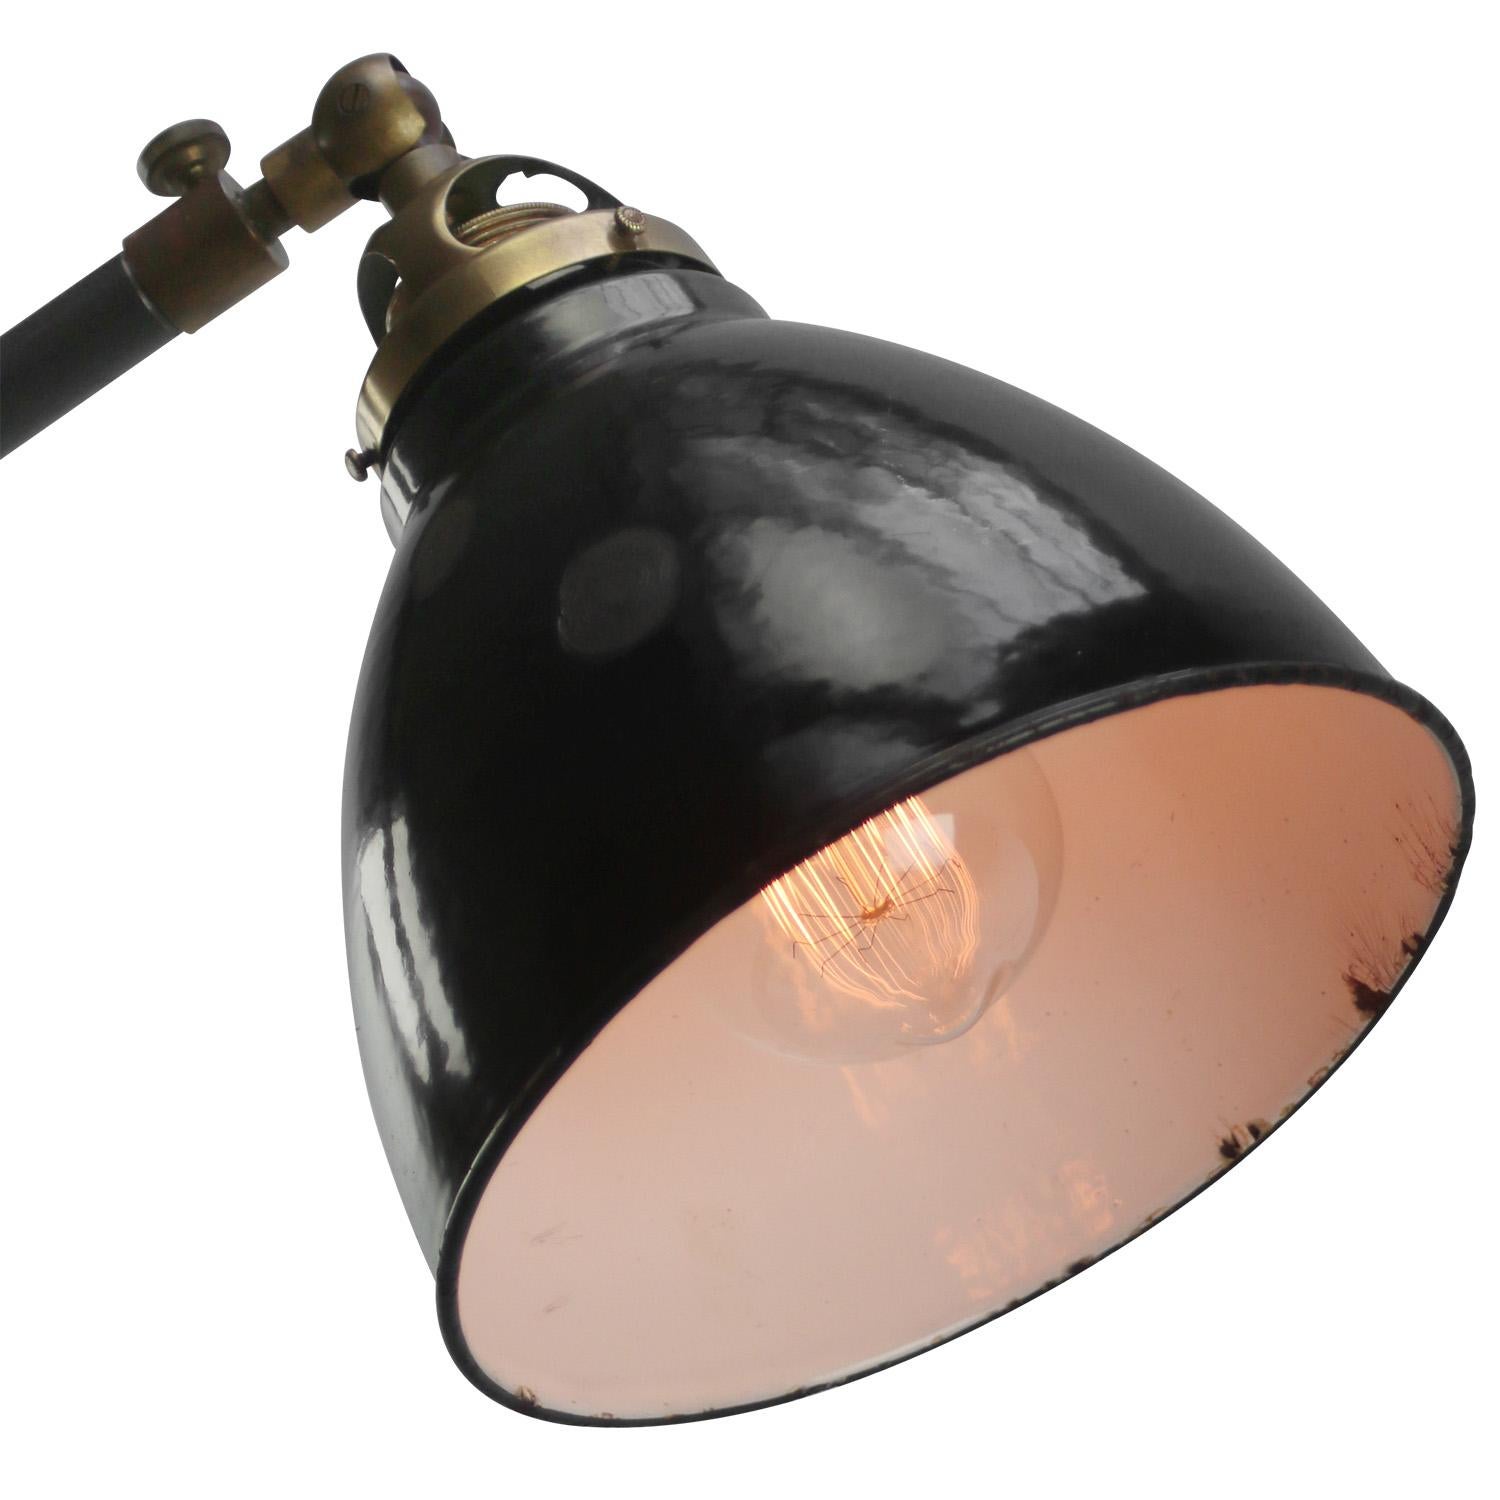 Schwarz Emaille Vintage industrielle Werkstatt Stehlampe
Gusseisen mit Messinggelenken
Im Winkel einstellbar. 

Durchmesser Fuß 23 cm

Elektrokabel 2 Meter / 80